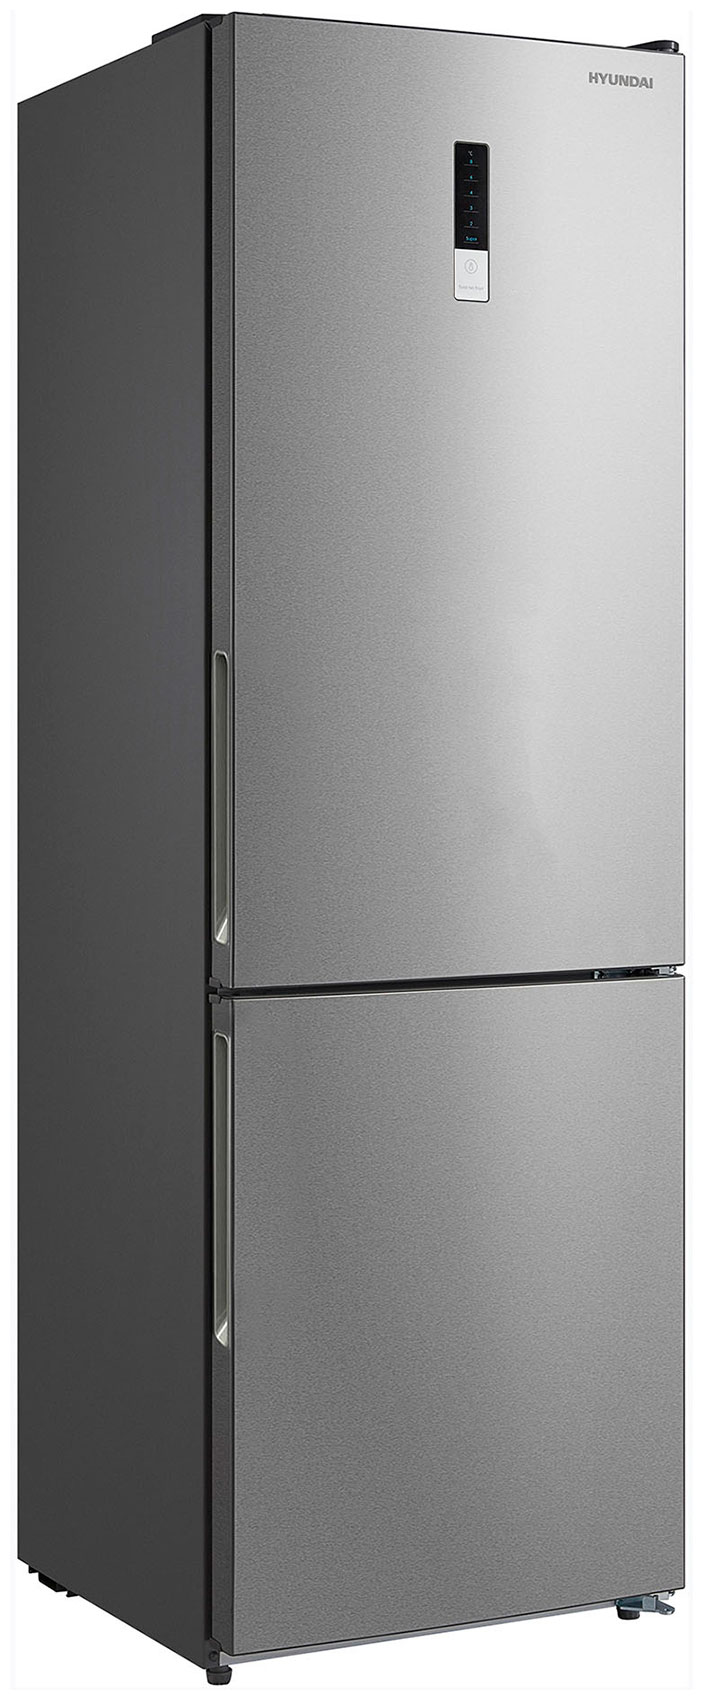 Двухкамерный холодильник Hyundai CC3095FIX нержавеющая сталь холодильник hyundai ct5045fix нержавеющая сталь двухкамерный